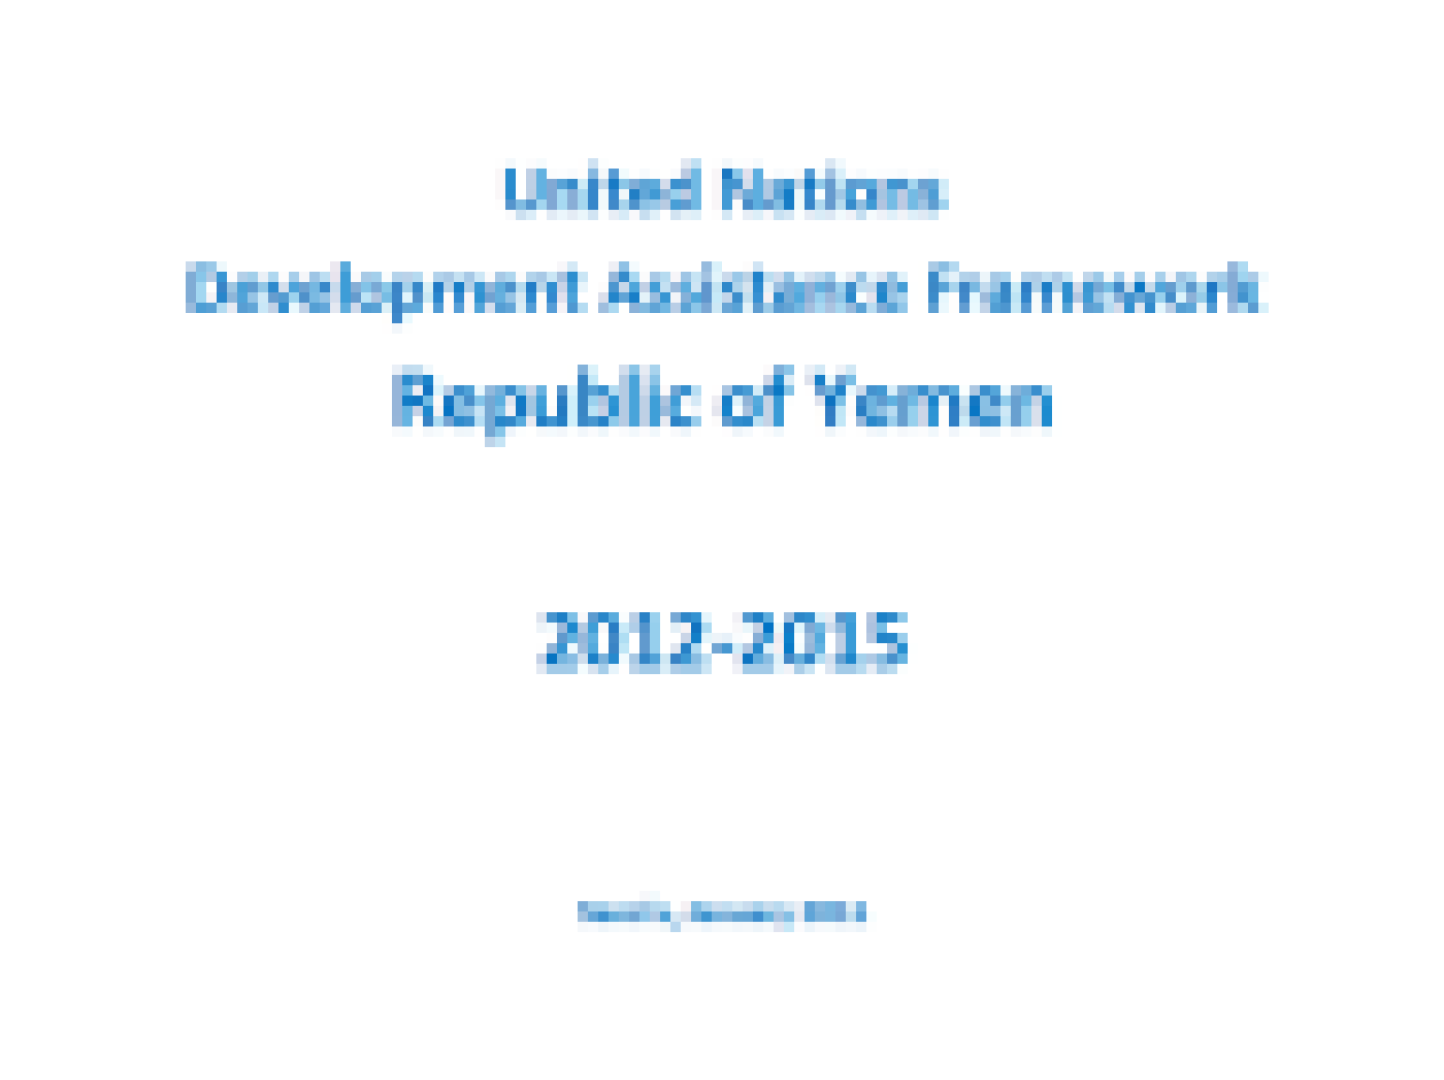 United Nations Development Assistance Framework (UNDAF) 2012 - 2015